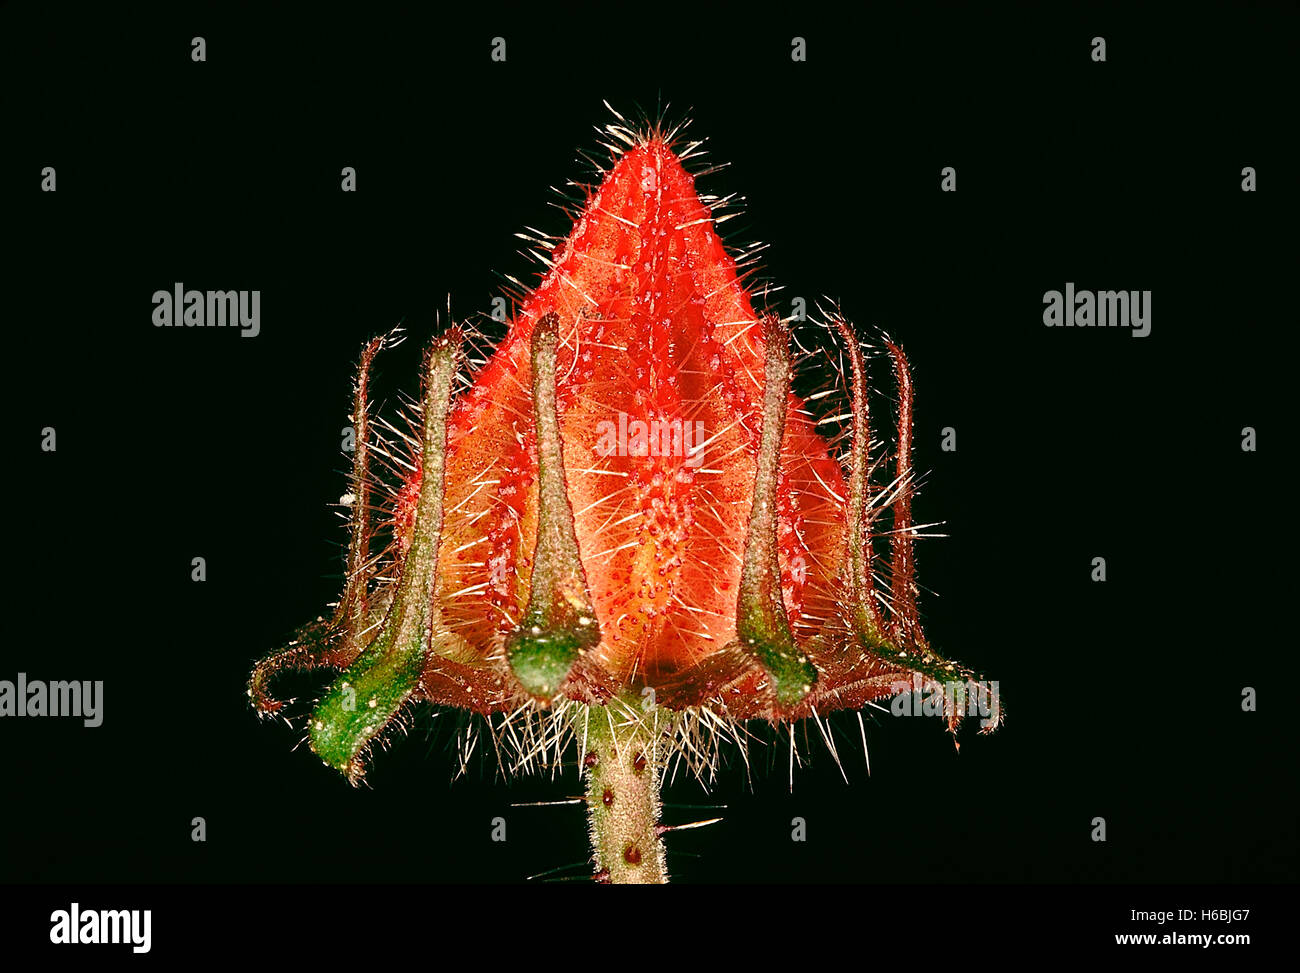 Famiglia: malvaceae, hibiscus sp. - Calice e epicalyx. una scalata hibiscus con spine agganciata sullo stelo. Foto Stock